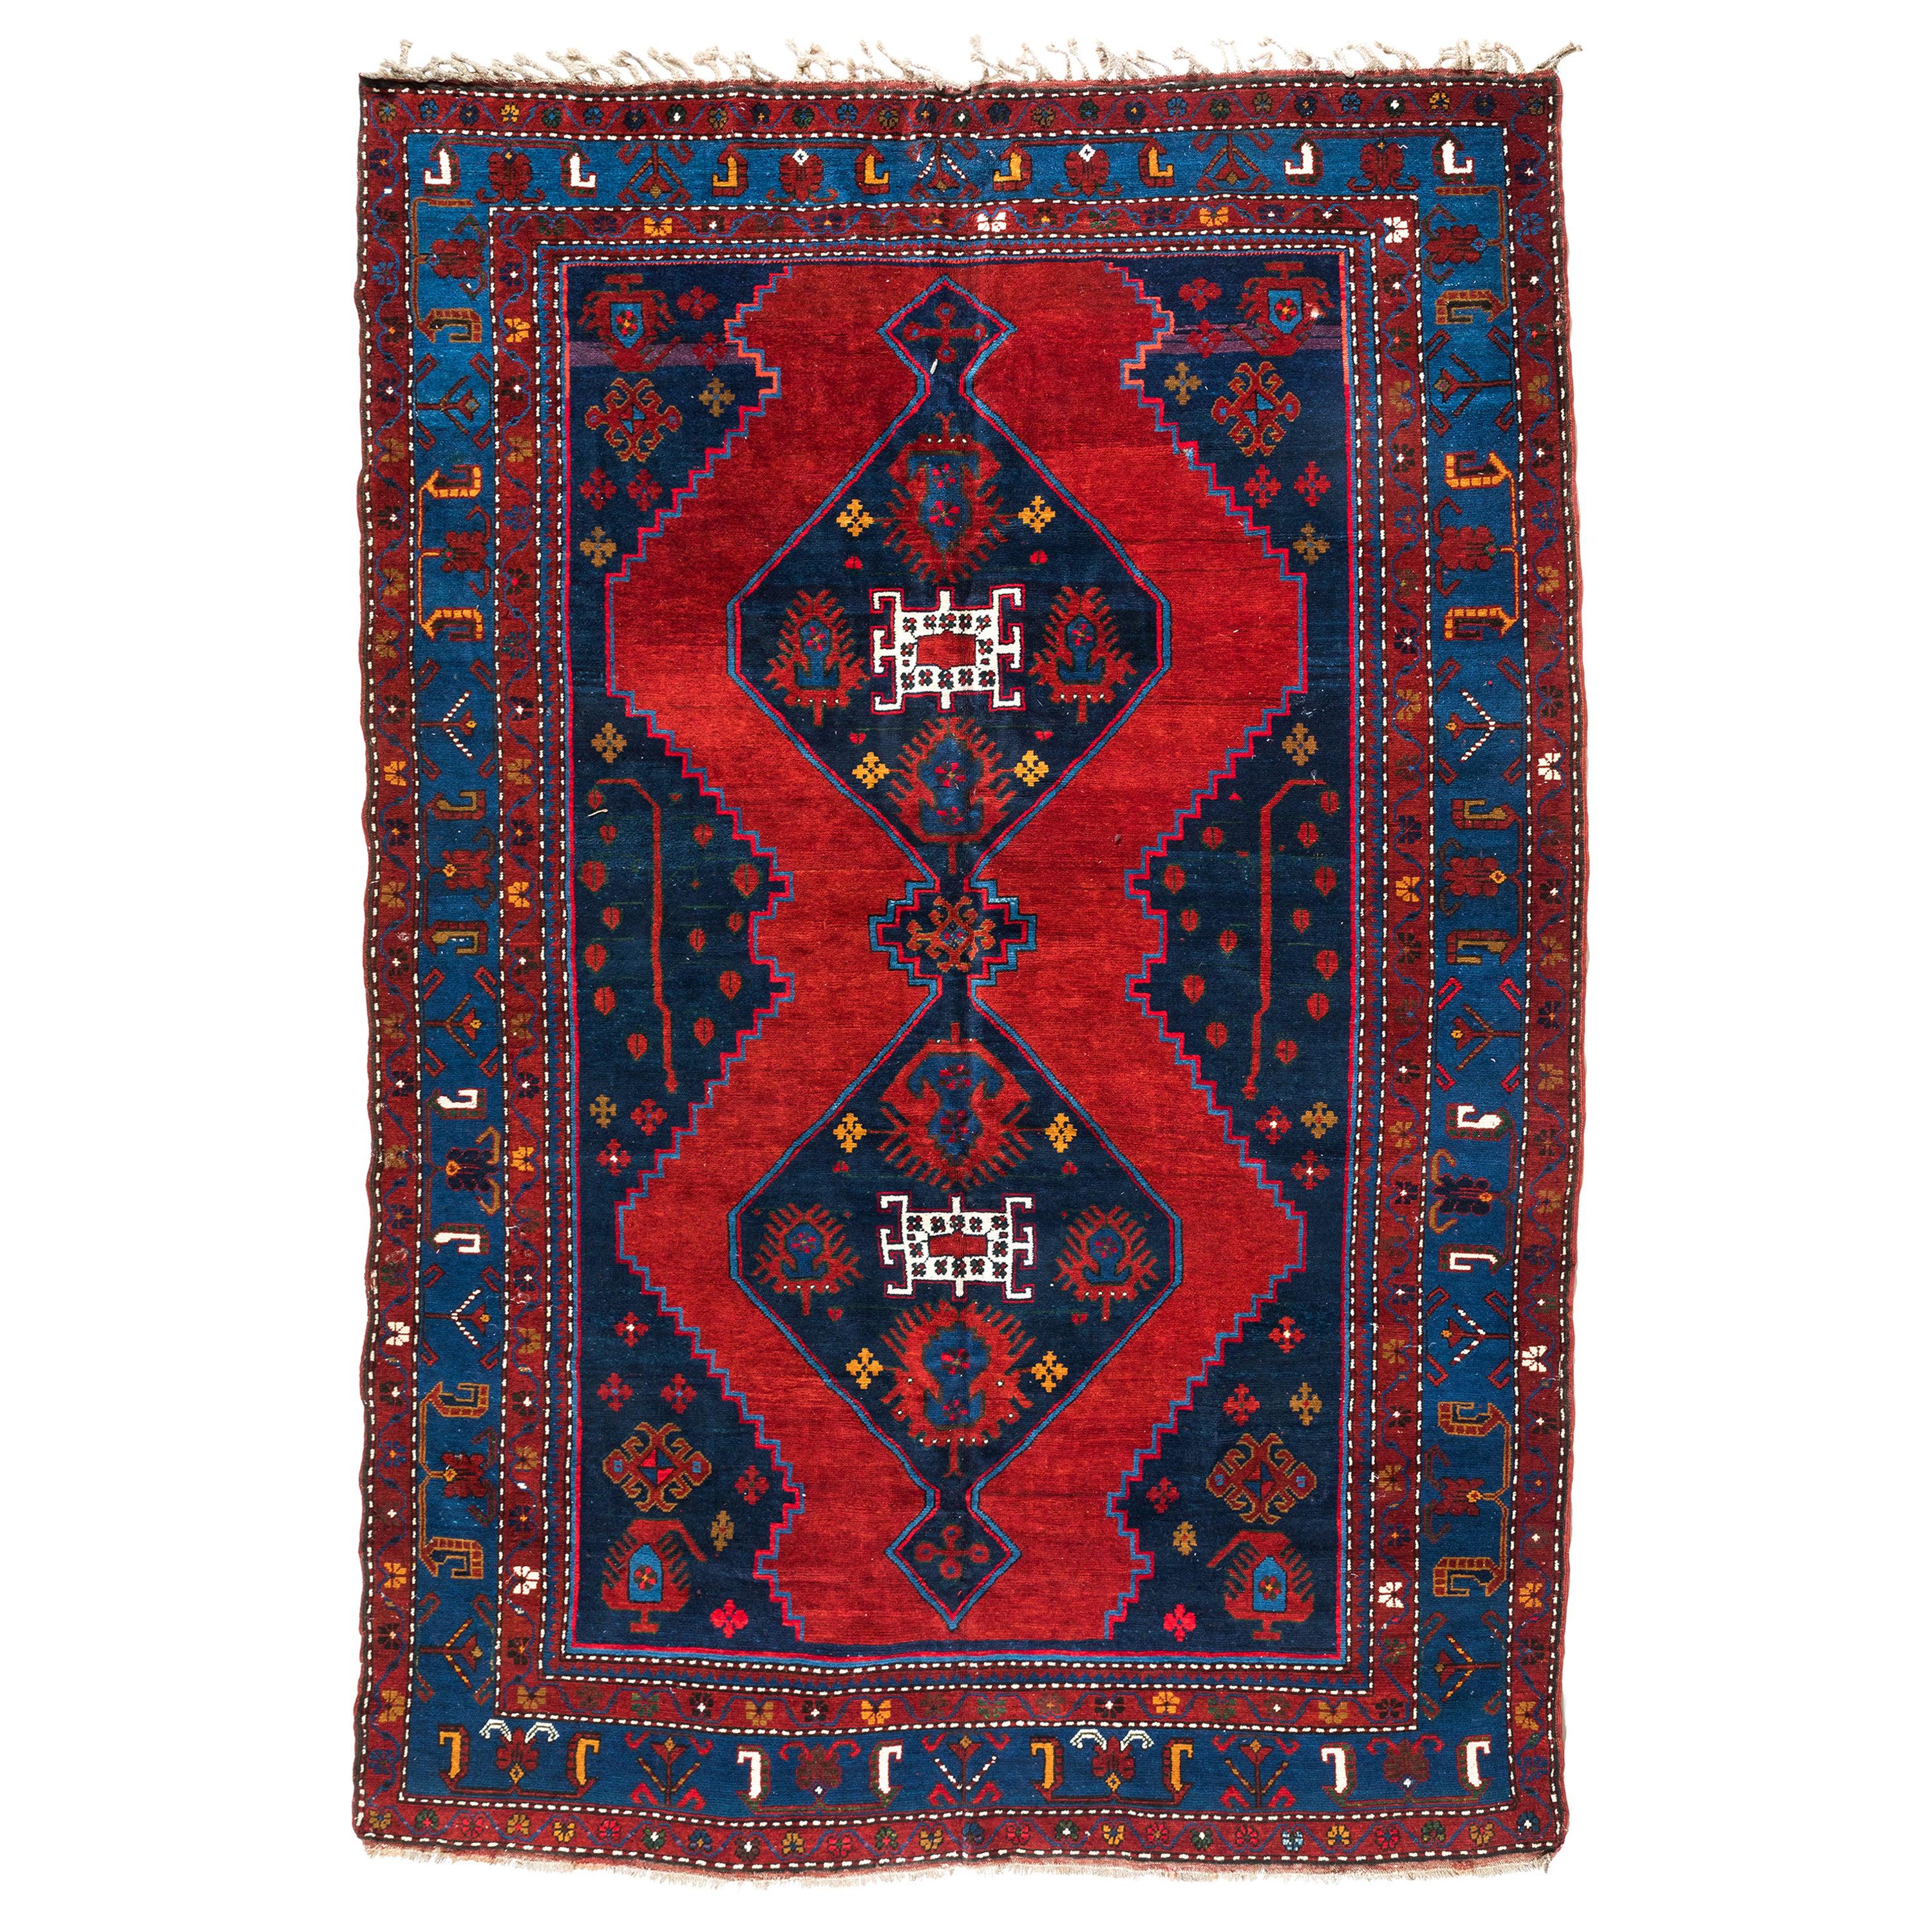 Ancien tapis caucasien tribal rouge marine bleu marine géométrique, vers les années 1950